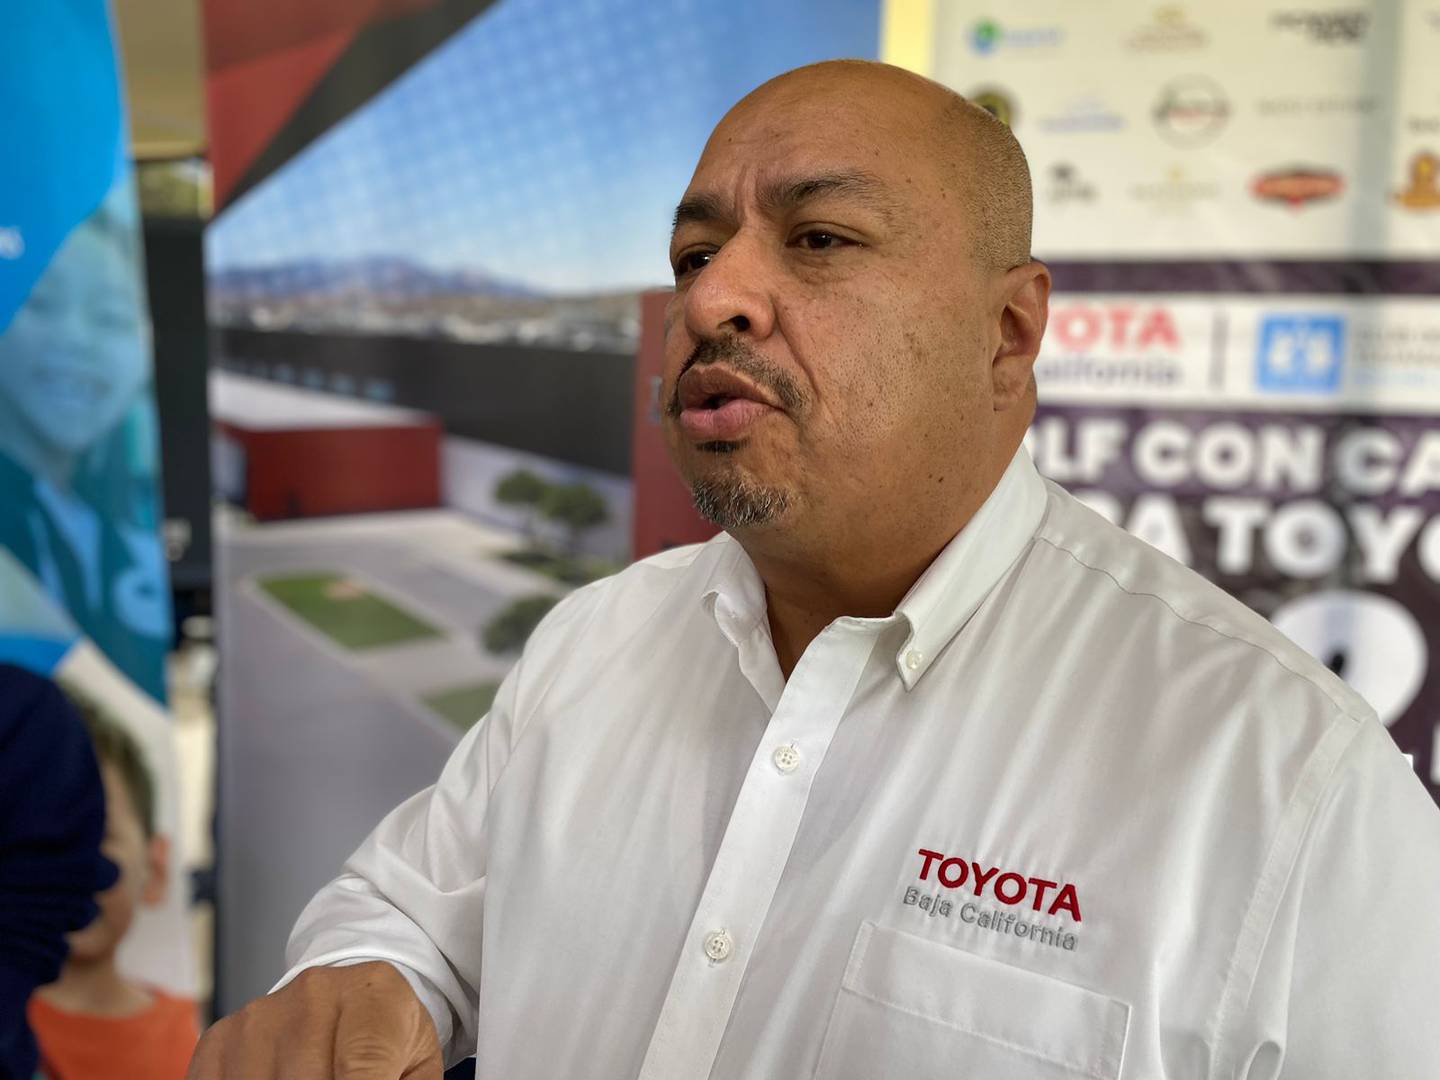 Plantas de Toyota en BC pararon operaciones por 2 semanas, descartan despidos